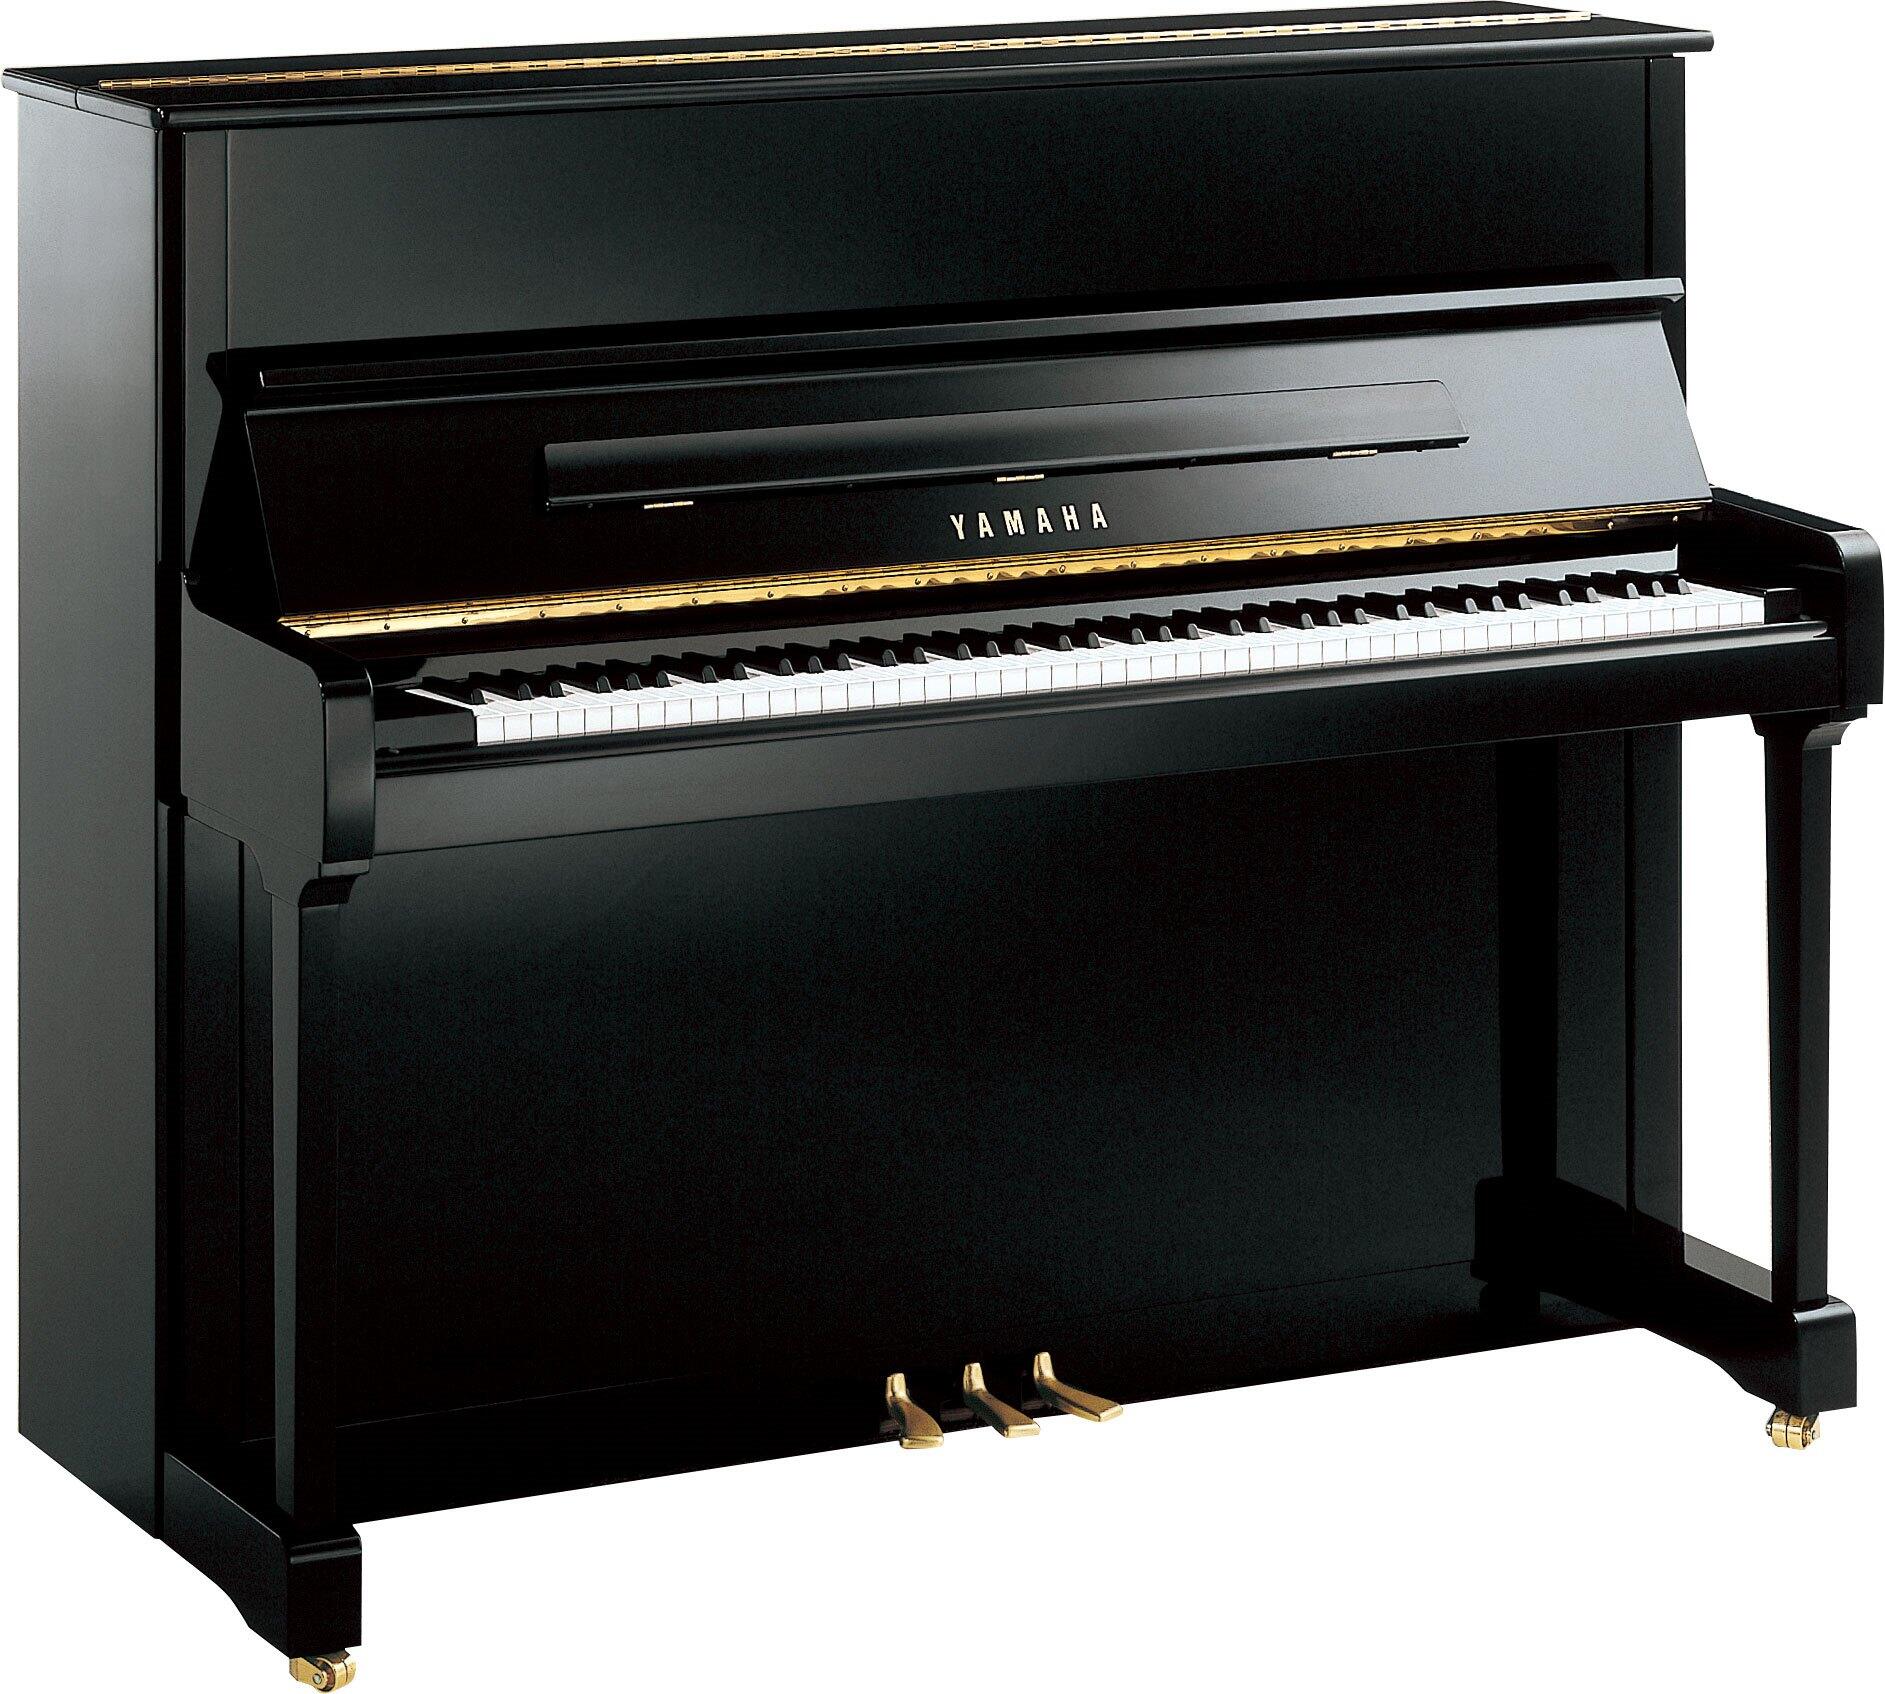 Yamaha Pianos Acoustic P121 PE Noir poli-brillant 121 cm : photo 1